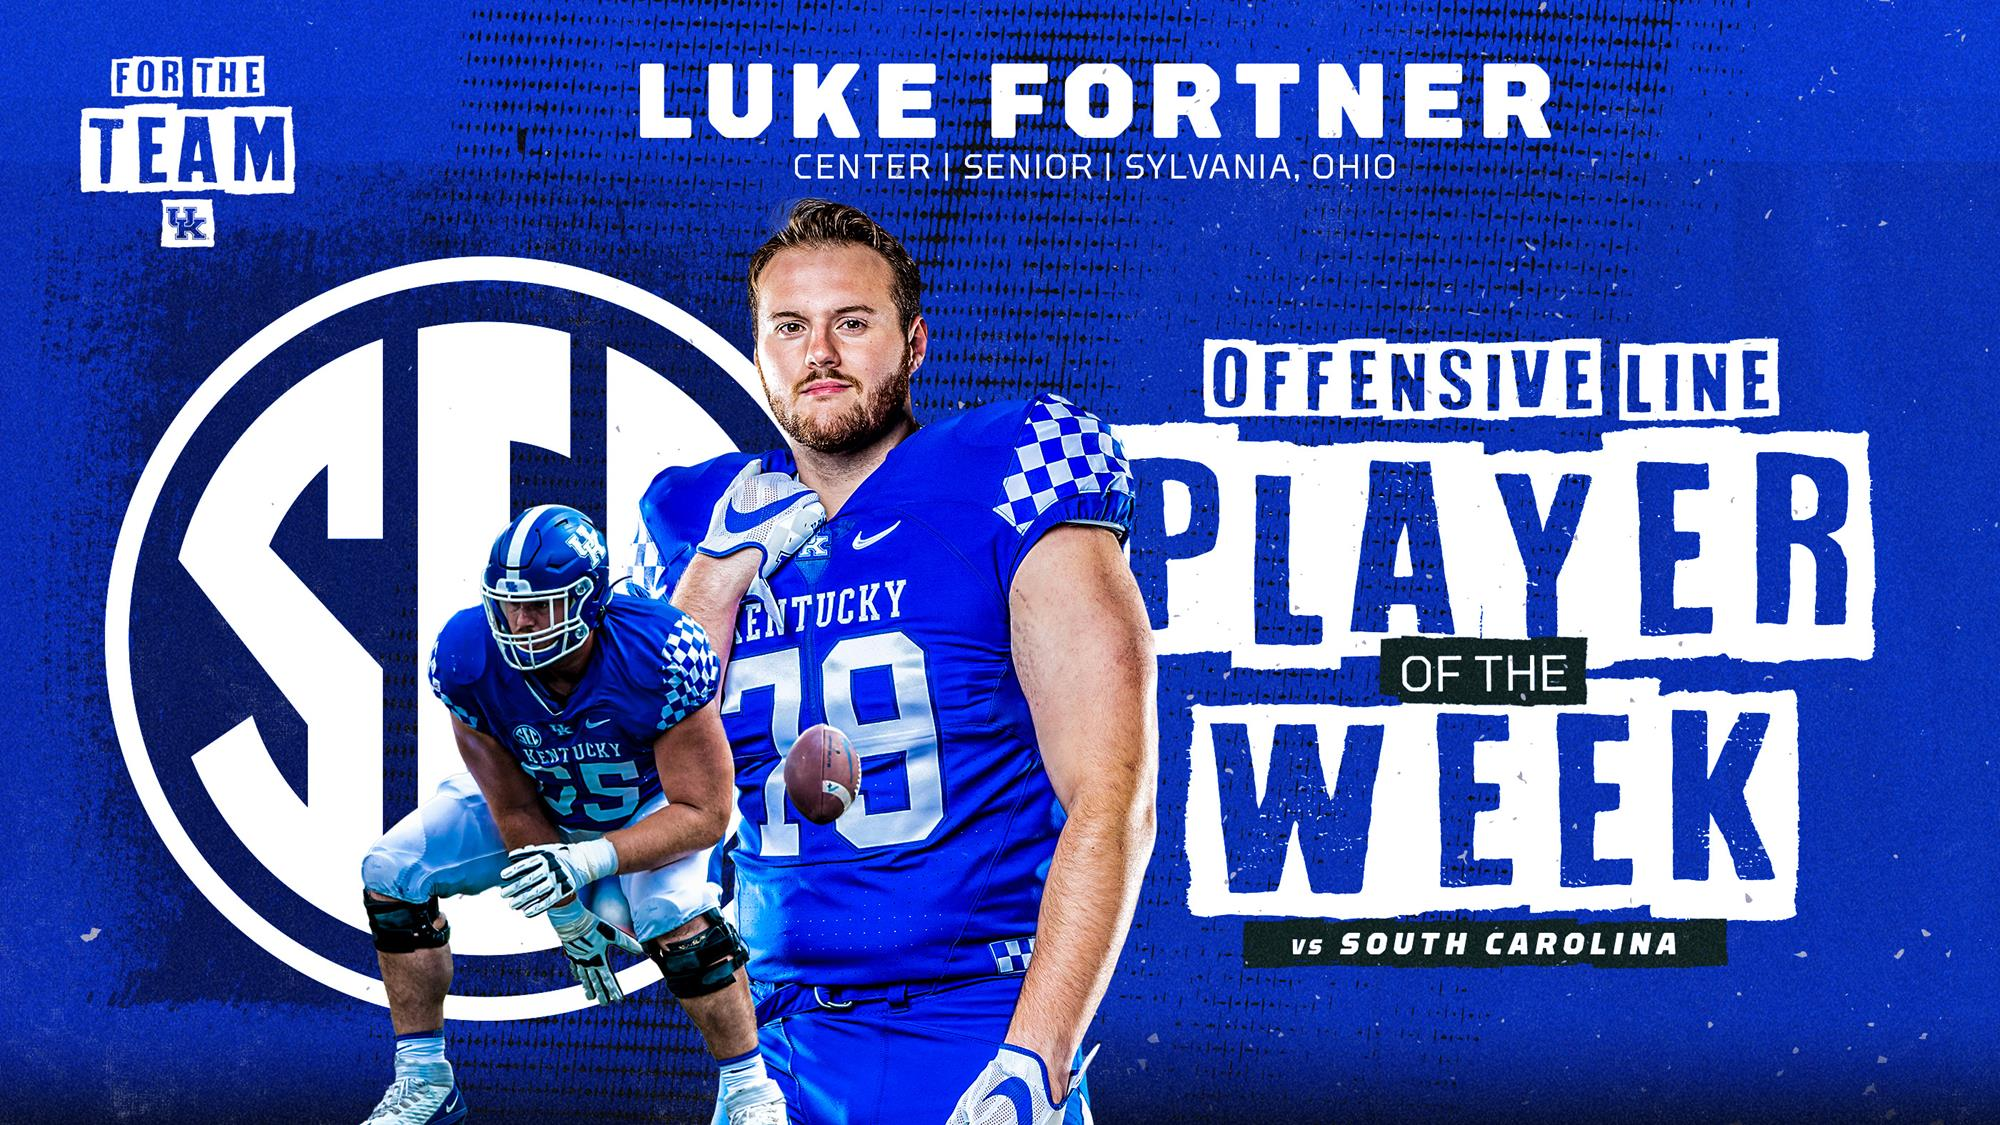 Luke Fortner Earns Second SEC Offensive Lineman of the Week Award